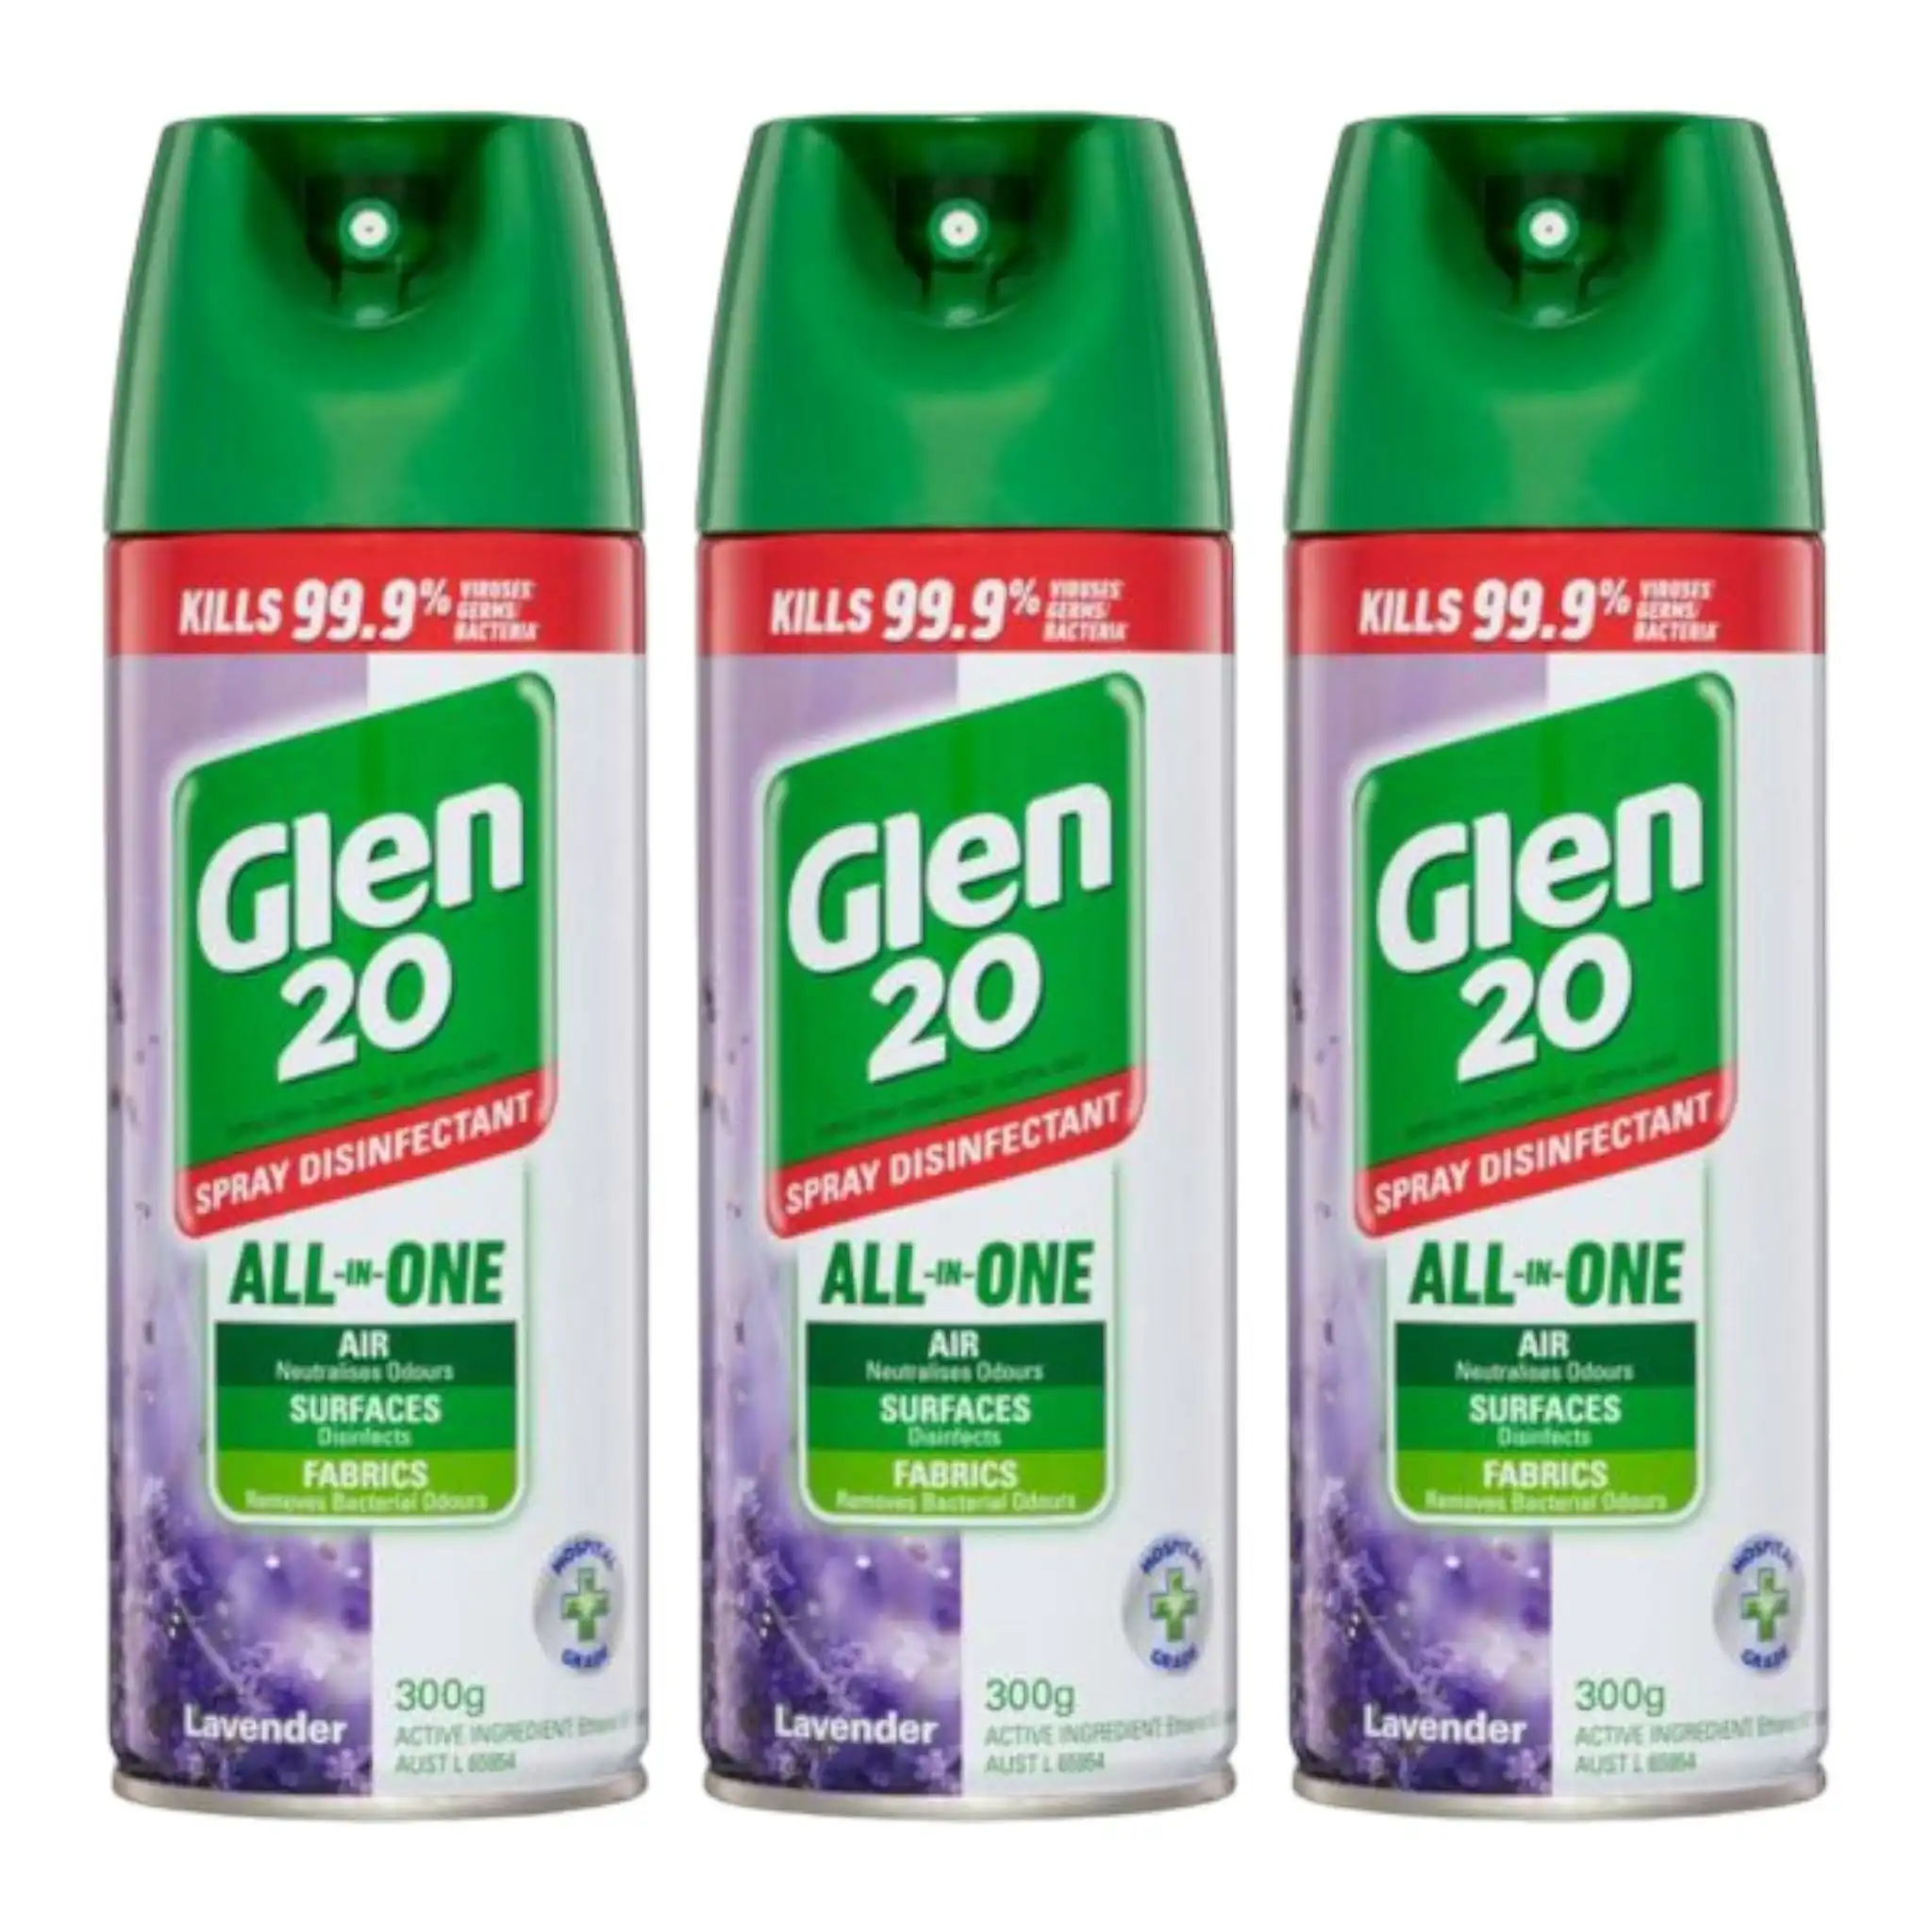 3 Pack Glen 20 Disinfectant Spray Lavender 300g